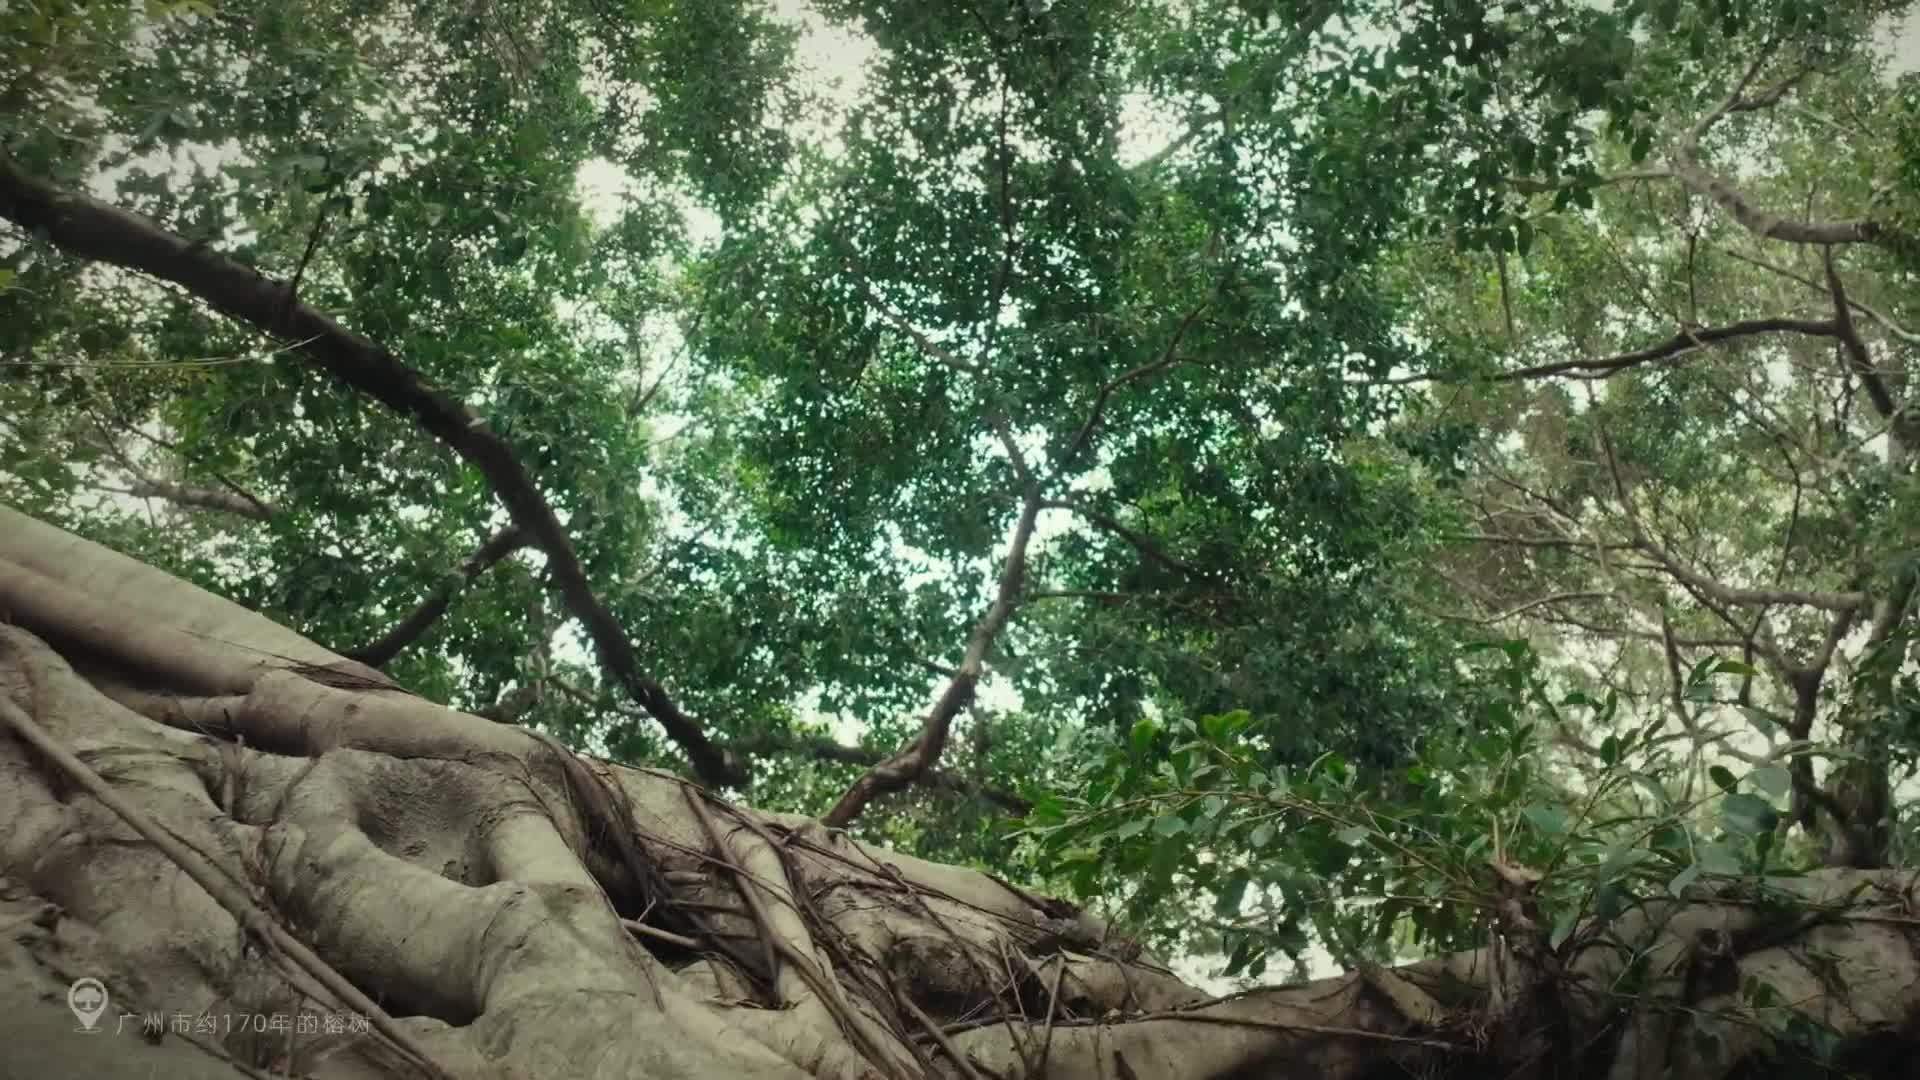 蚂蚁森林古树保护-广州篇